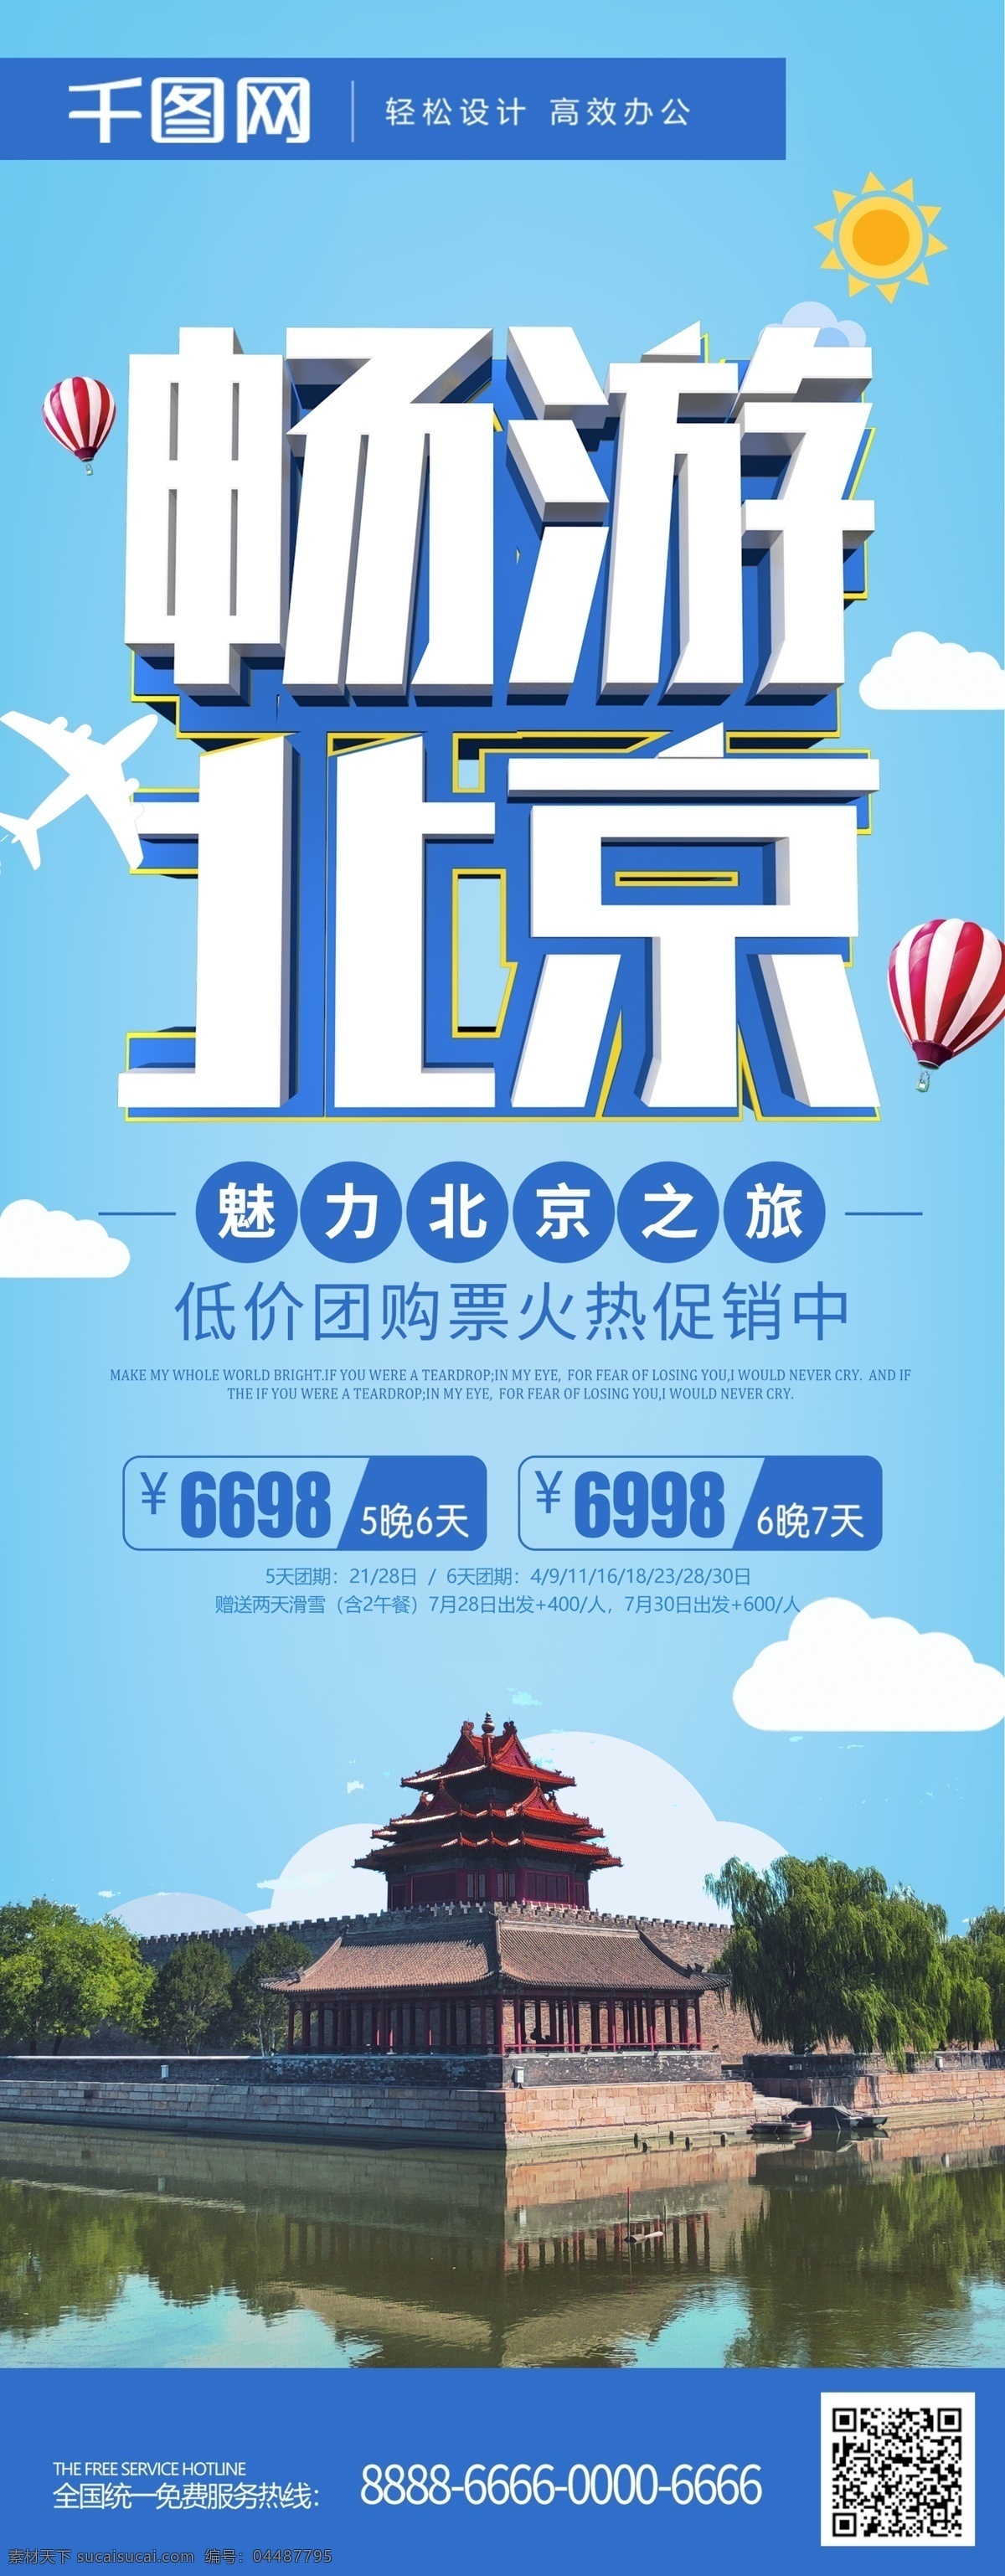 蓝色 简约 大气 北京 旅游 展架